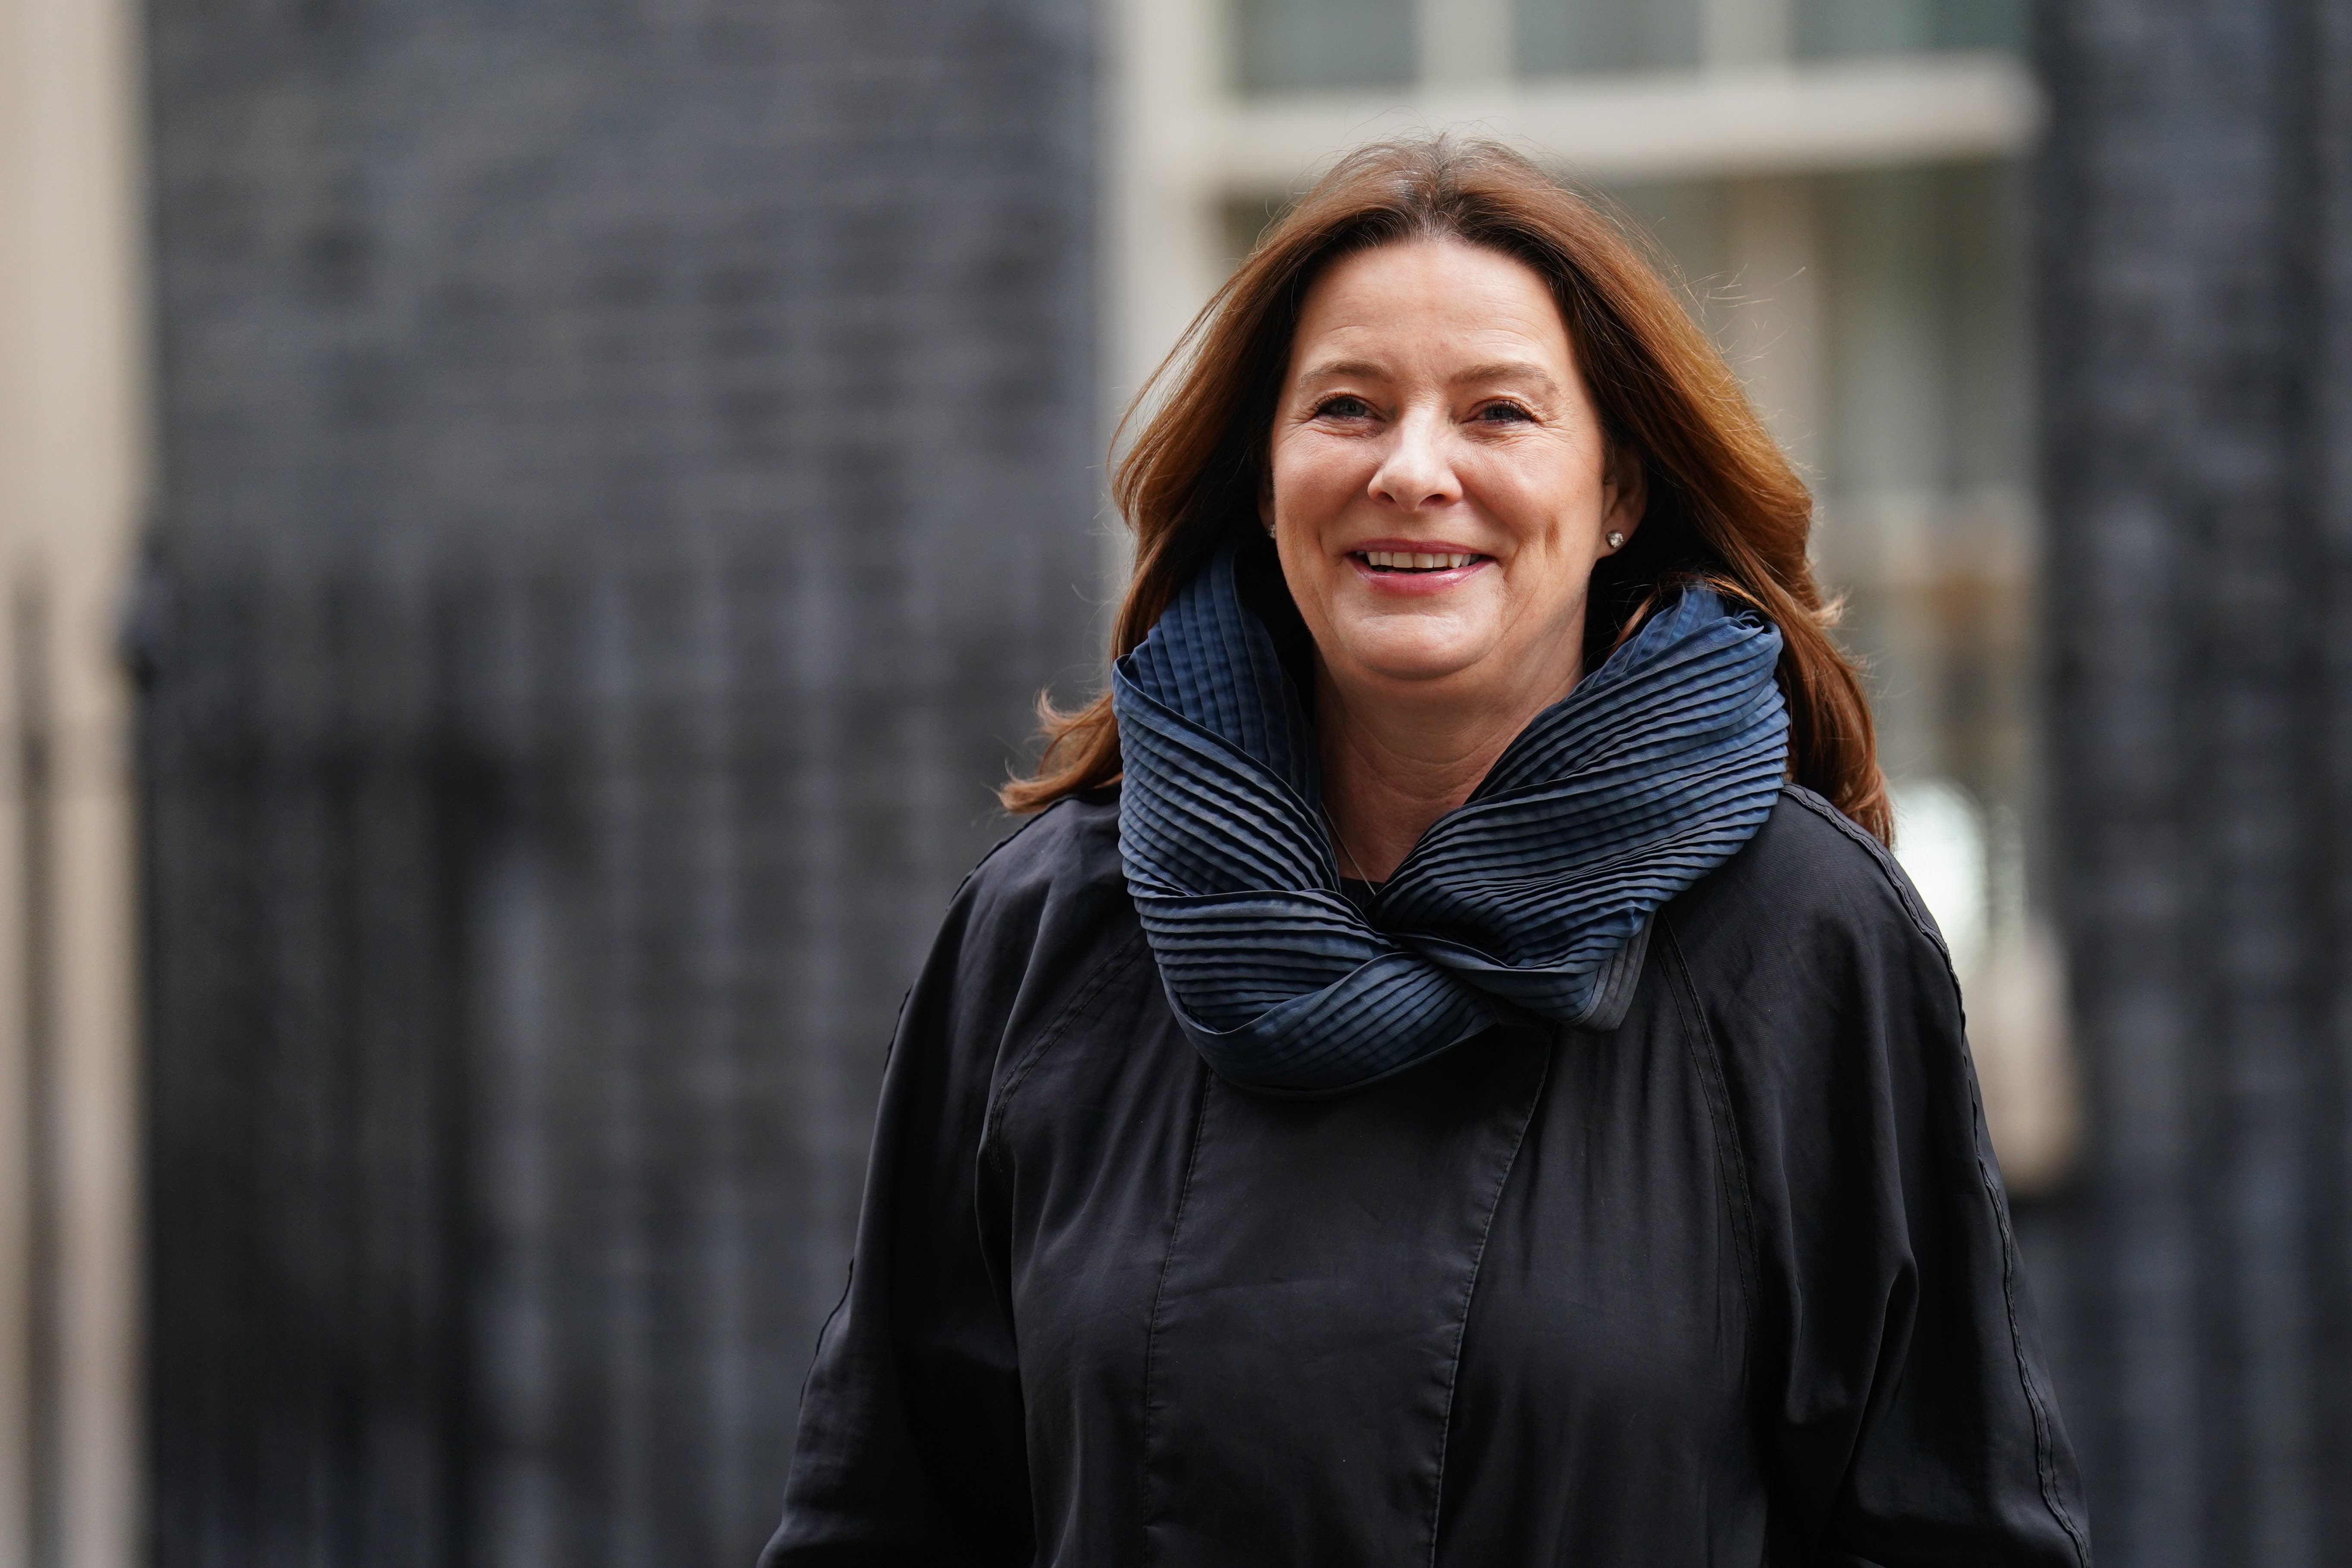 Education secretary Gillian Keegan has said reducing absenteeism is her top priority